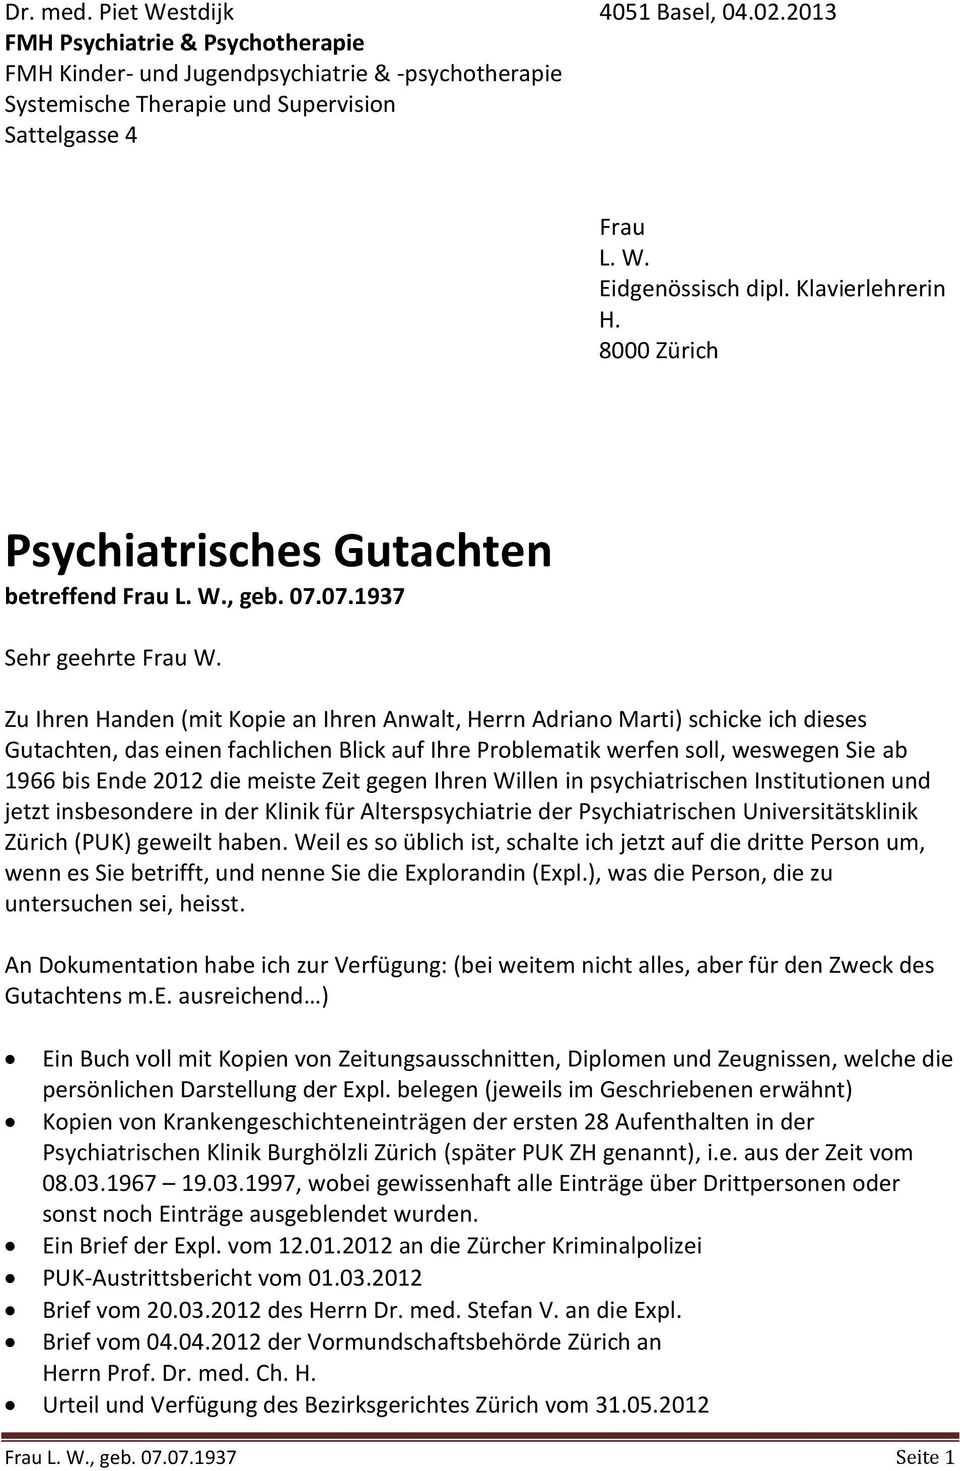 Psychiatrisches Gutachten Betreffend Frau L W Geb Pdf Free Download